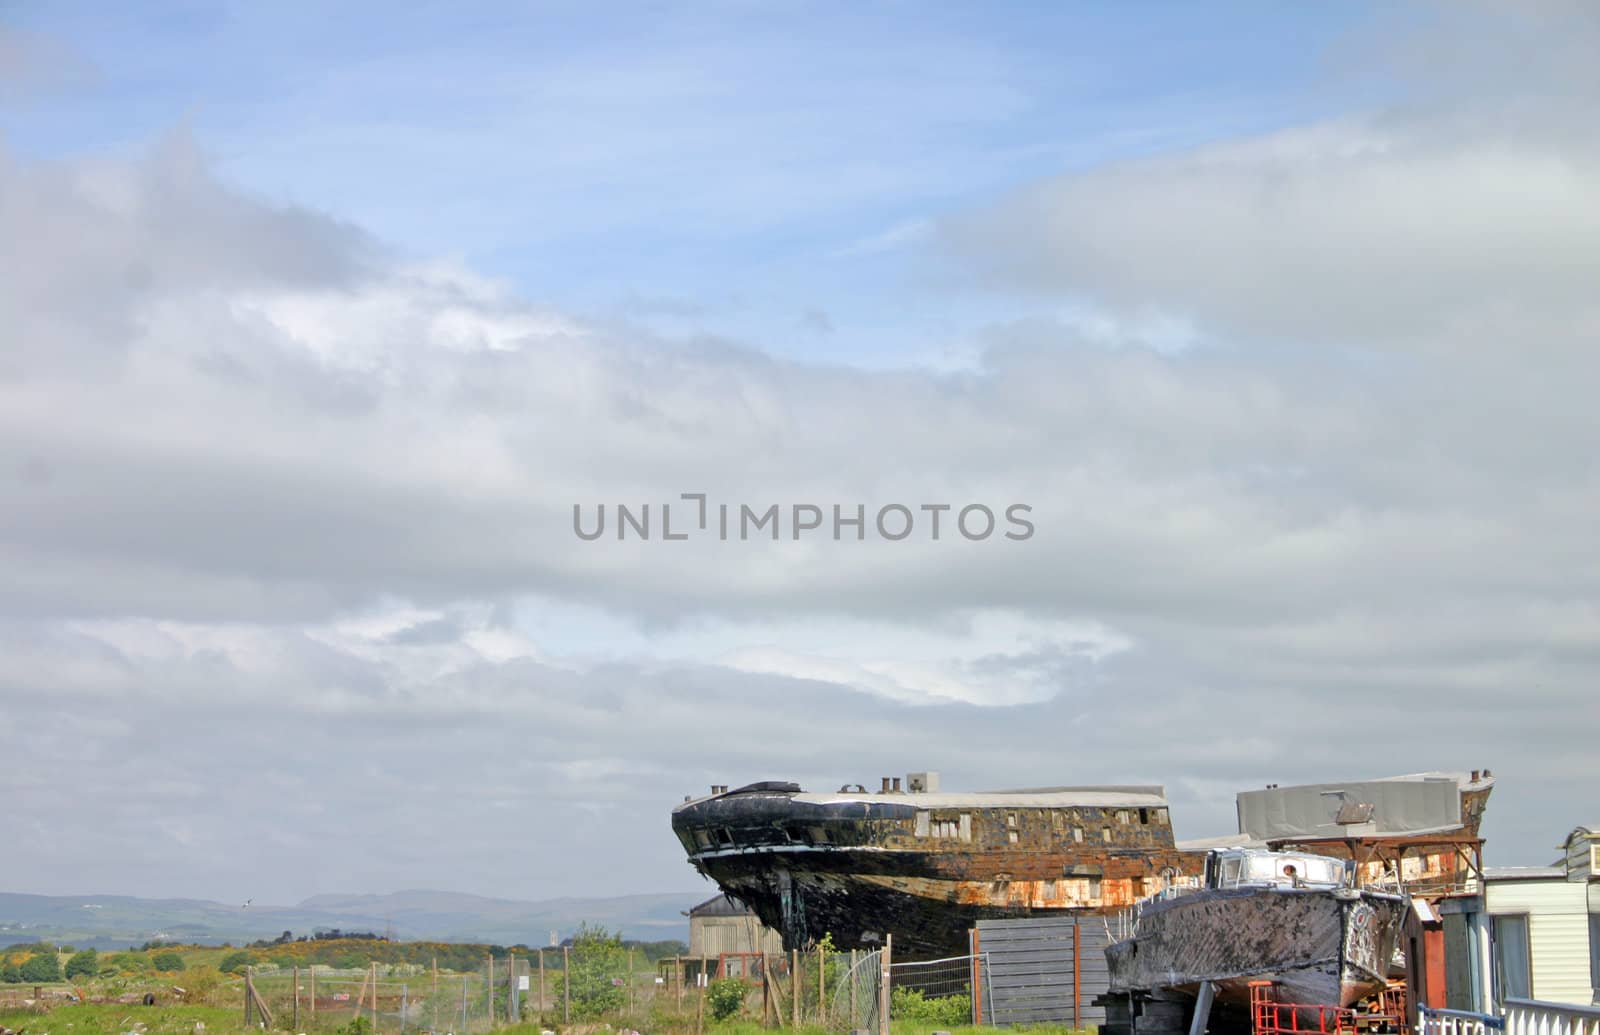 Old Ship Wrecks at Ayr Scotland UK